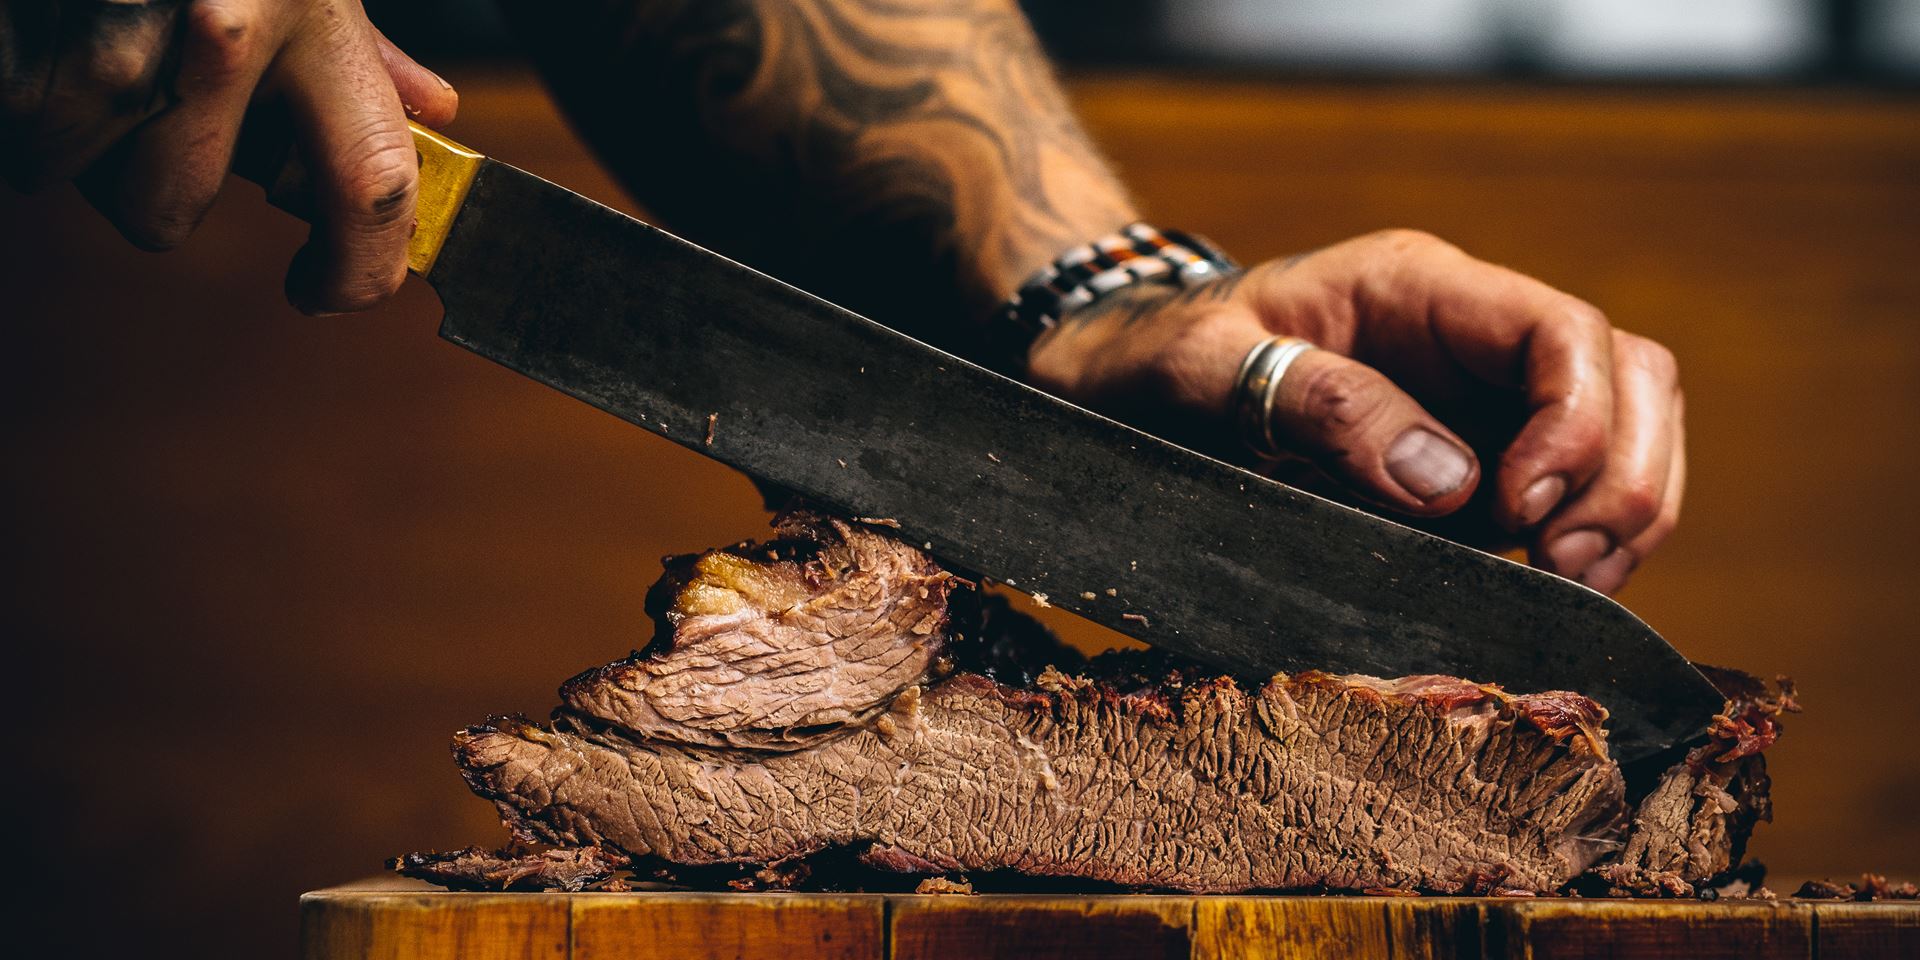 Man slicing steak